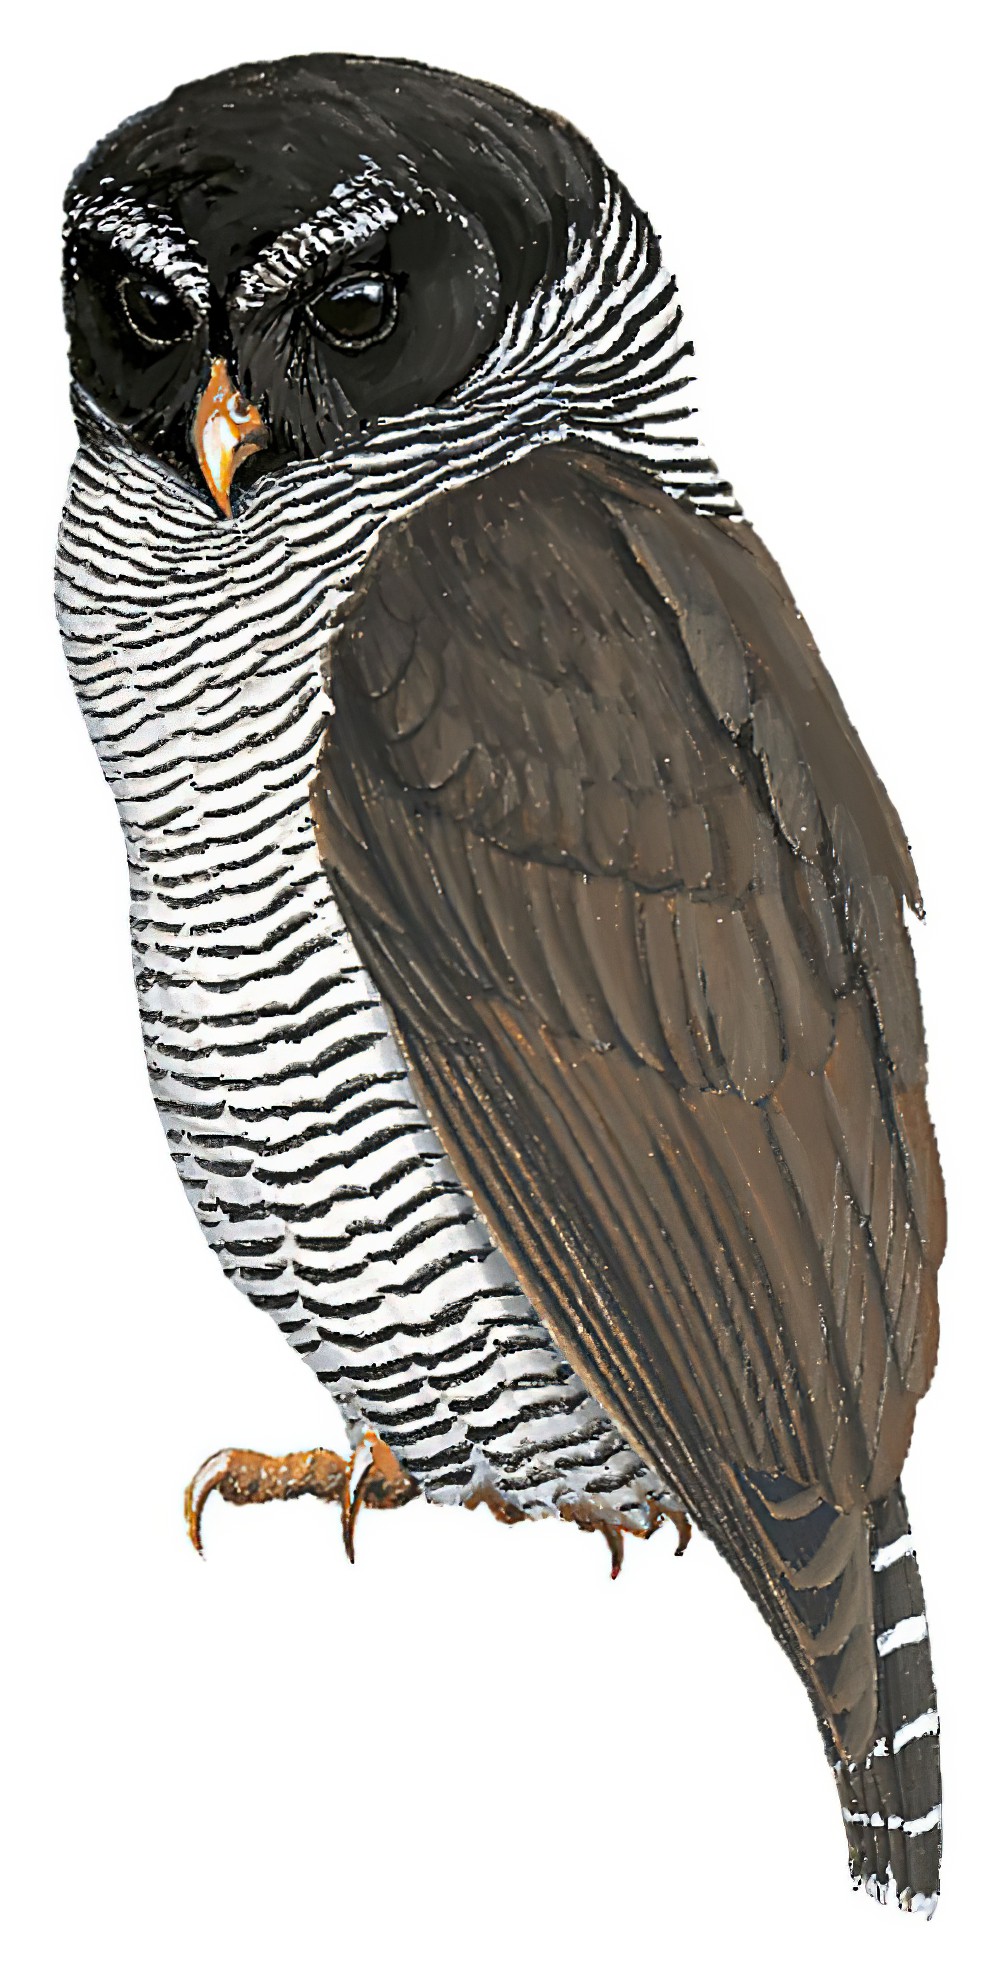 Black-and-white Owl / Ciccaba nigrolineata